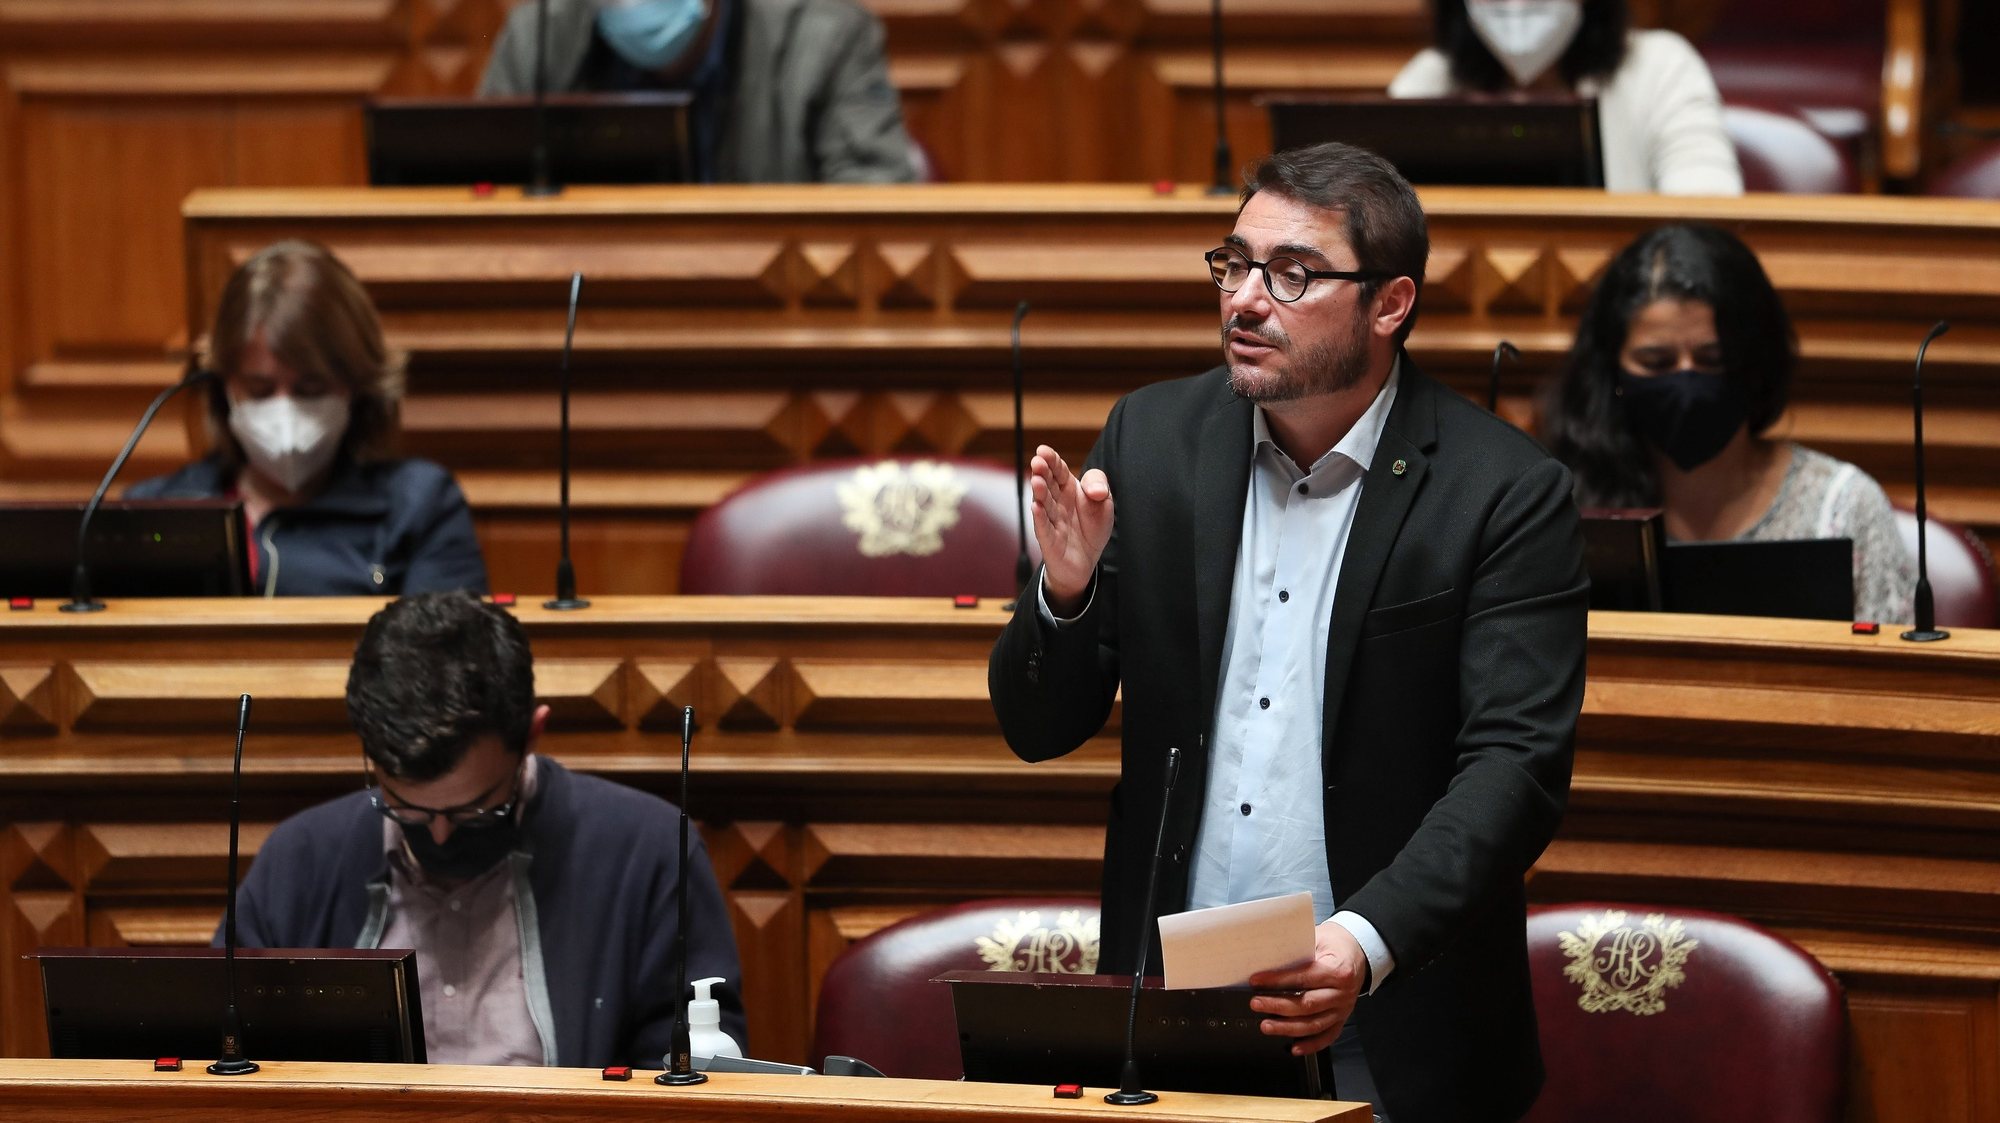 O deputado do PCP, João Oliveira, intervém sobre a aplicação da Declaração do Estado de Emergência no debate parlamentar na Assembleia da República, em Lisboa, 18 de maio de 2021. MÁRIO CRUZ/LUSA